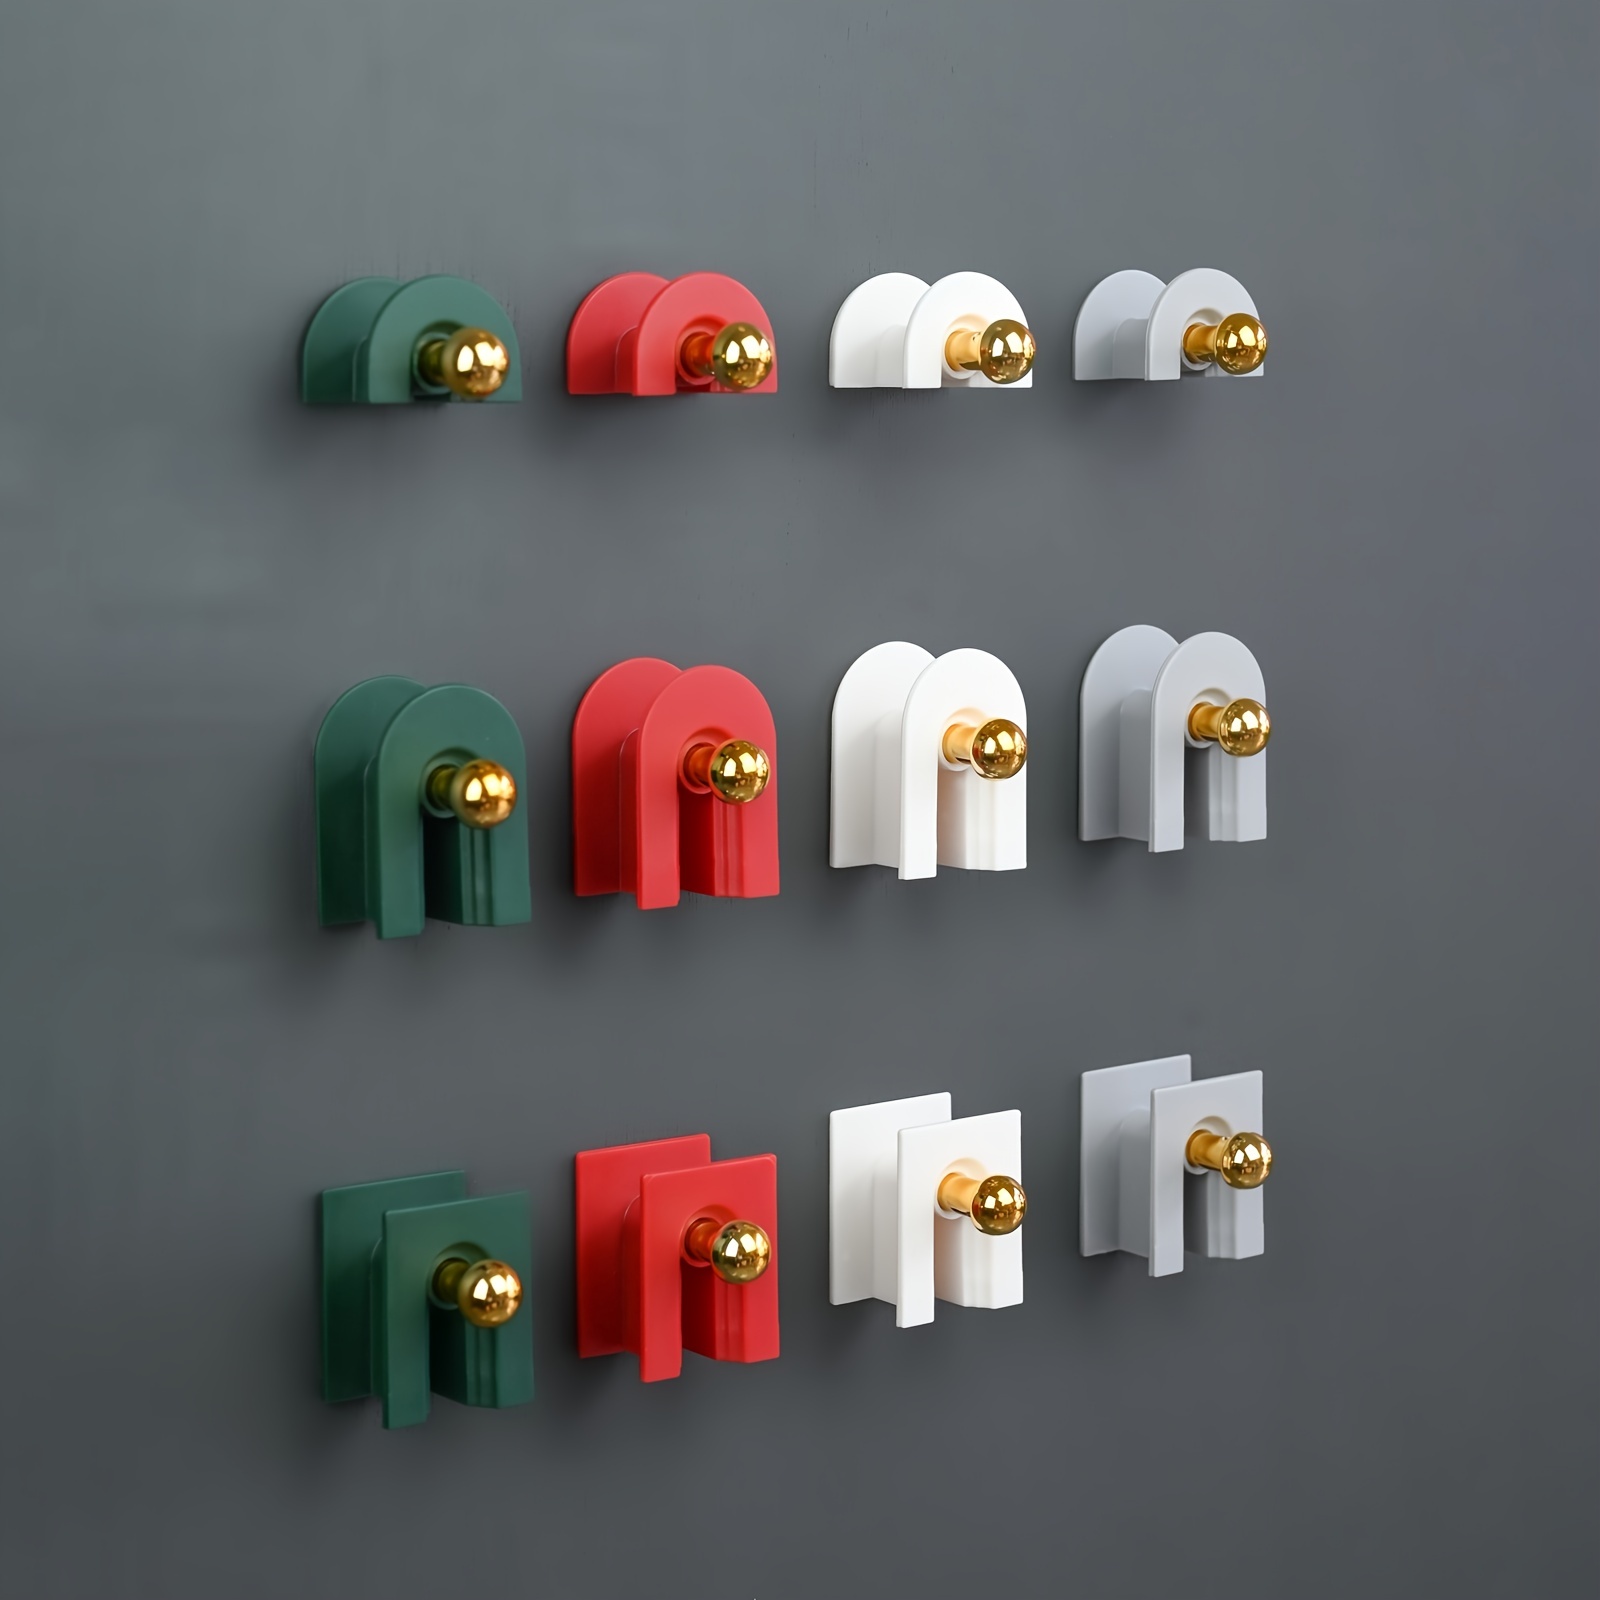 Torytoe cuelga llaves pared, con 3 ganchos colgador de llaves adhesivo sin  perforar organizador de llaves pared para la entrada, el vestíbulo, la  cocina, (blanco, 27 x 8 x 6.2 cm) 